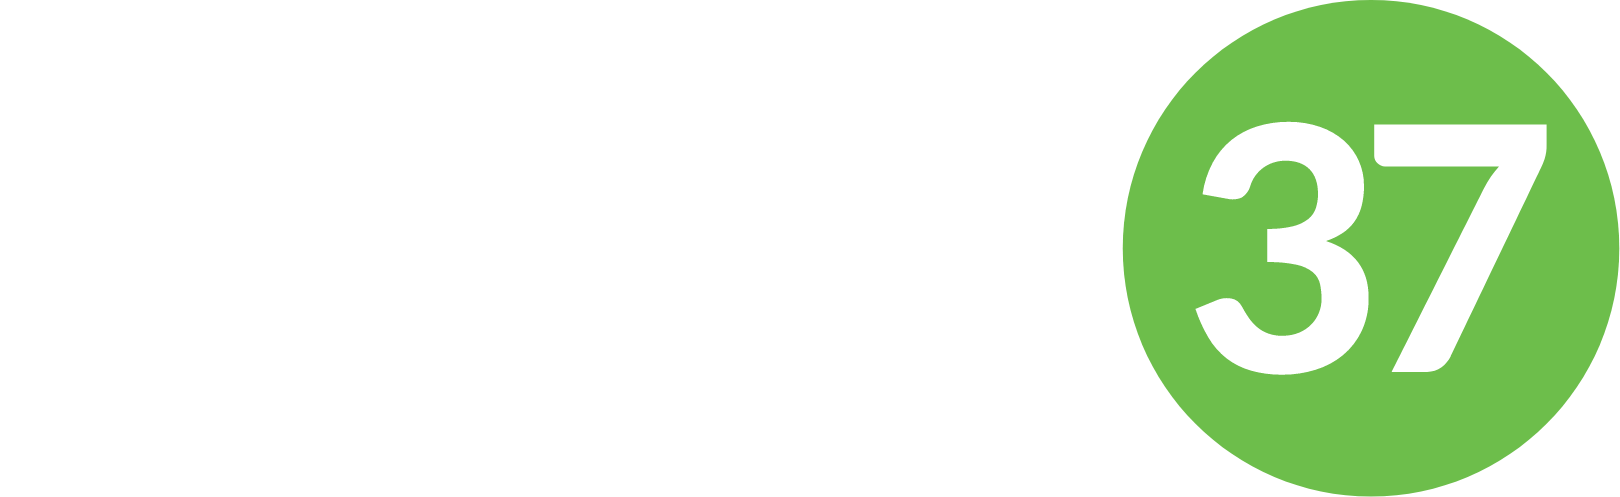 Science 37 logo grand pour les fonds sombres (PNG transparent)